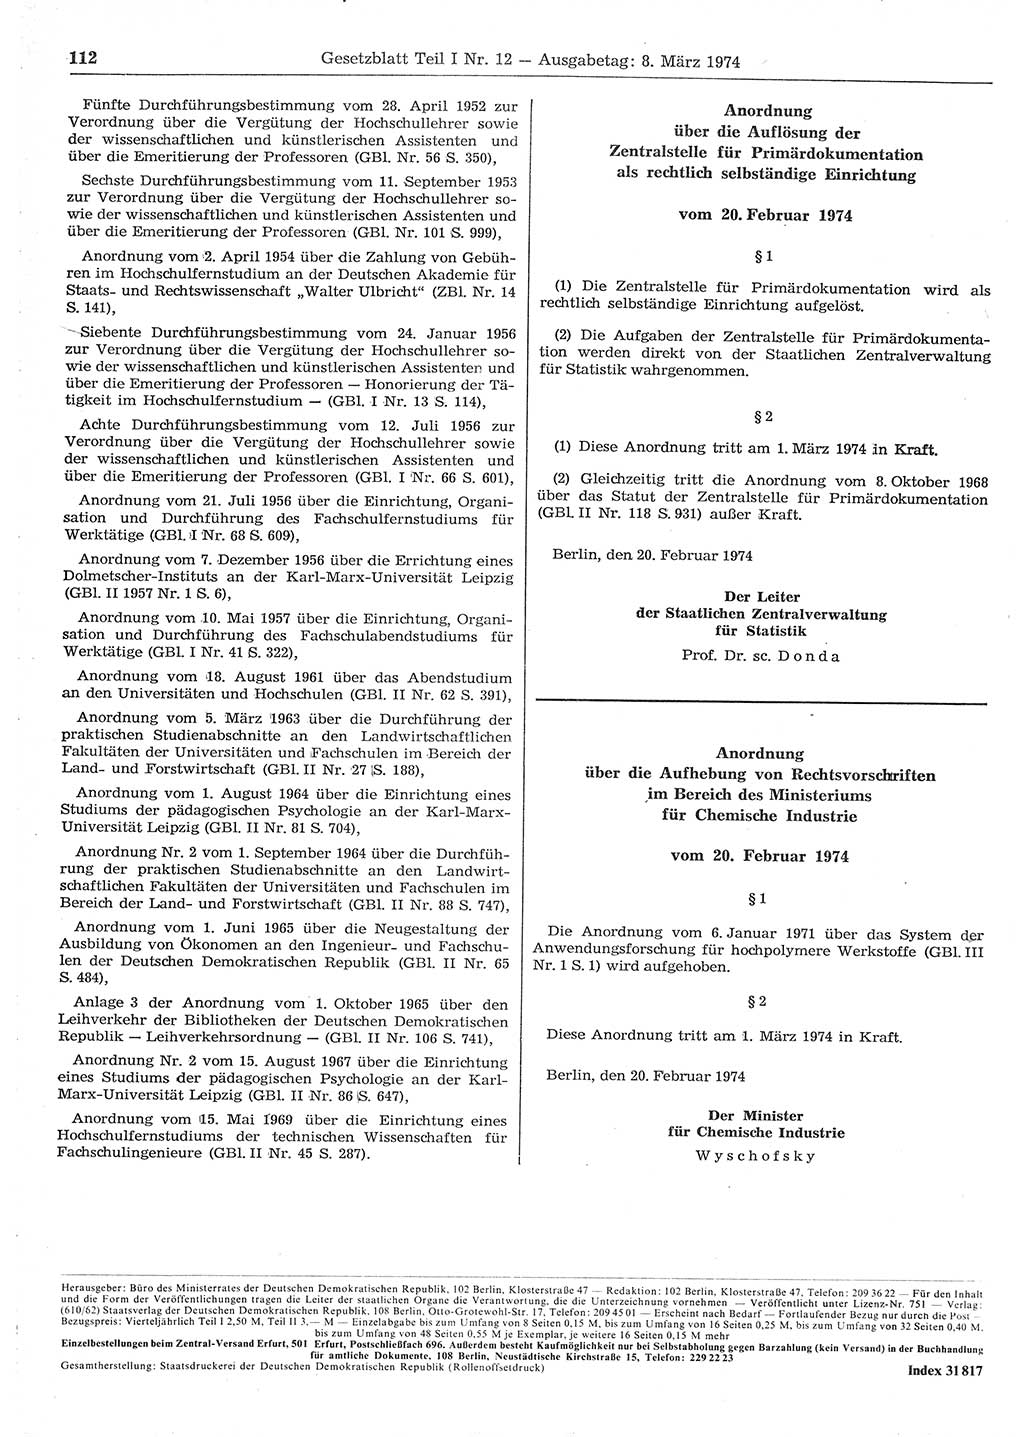 Gesetzblatt (GBl.) der Deutschen Demokratischen Republik (DDR) Teil Ⅰ 1974, Seite 112 (GBl. DDR Ⅰ 1974, S. 112)